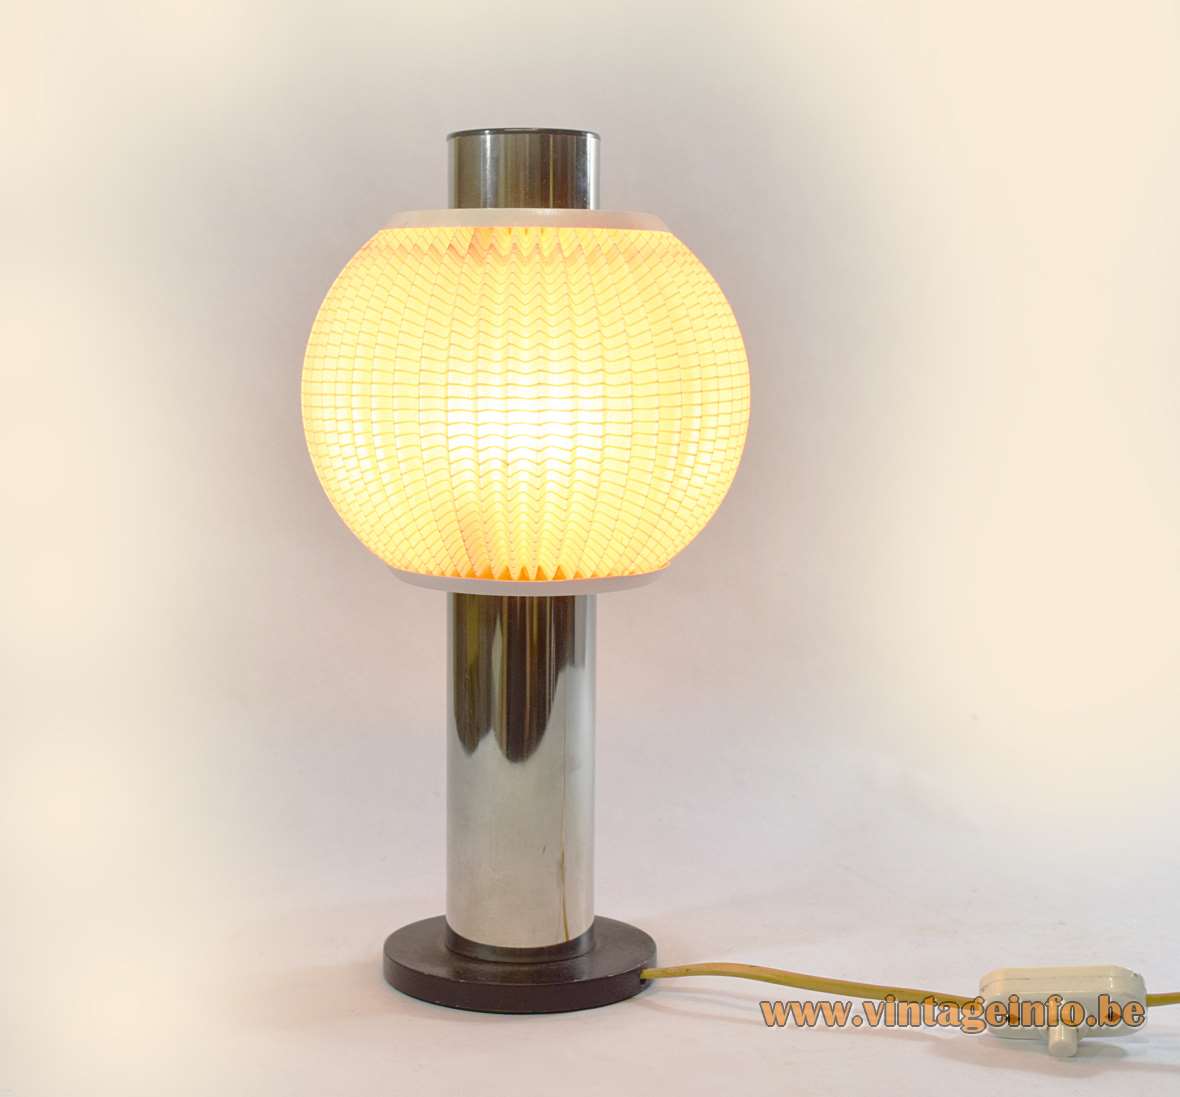 East German Table Lamp Vintageinfo, German Table Lamp Manufacturers